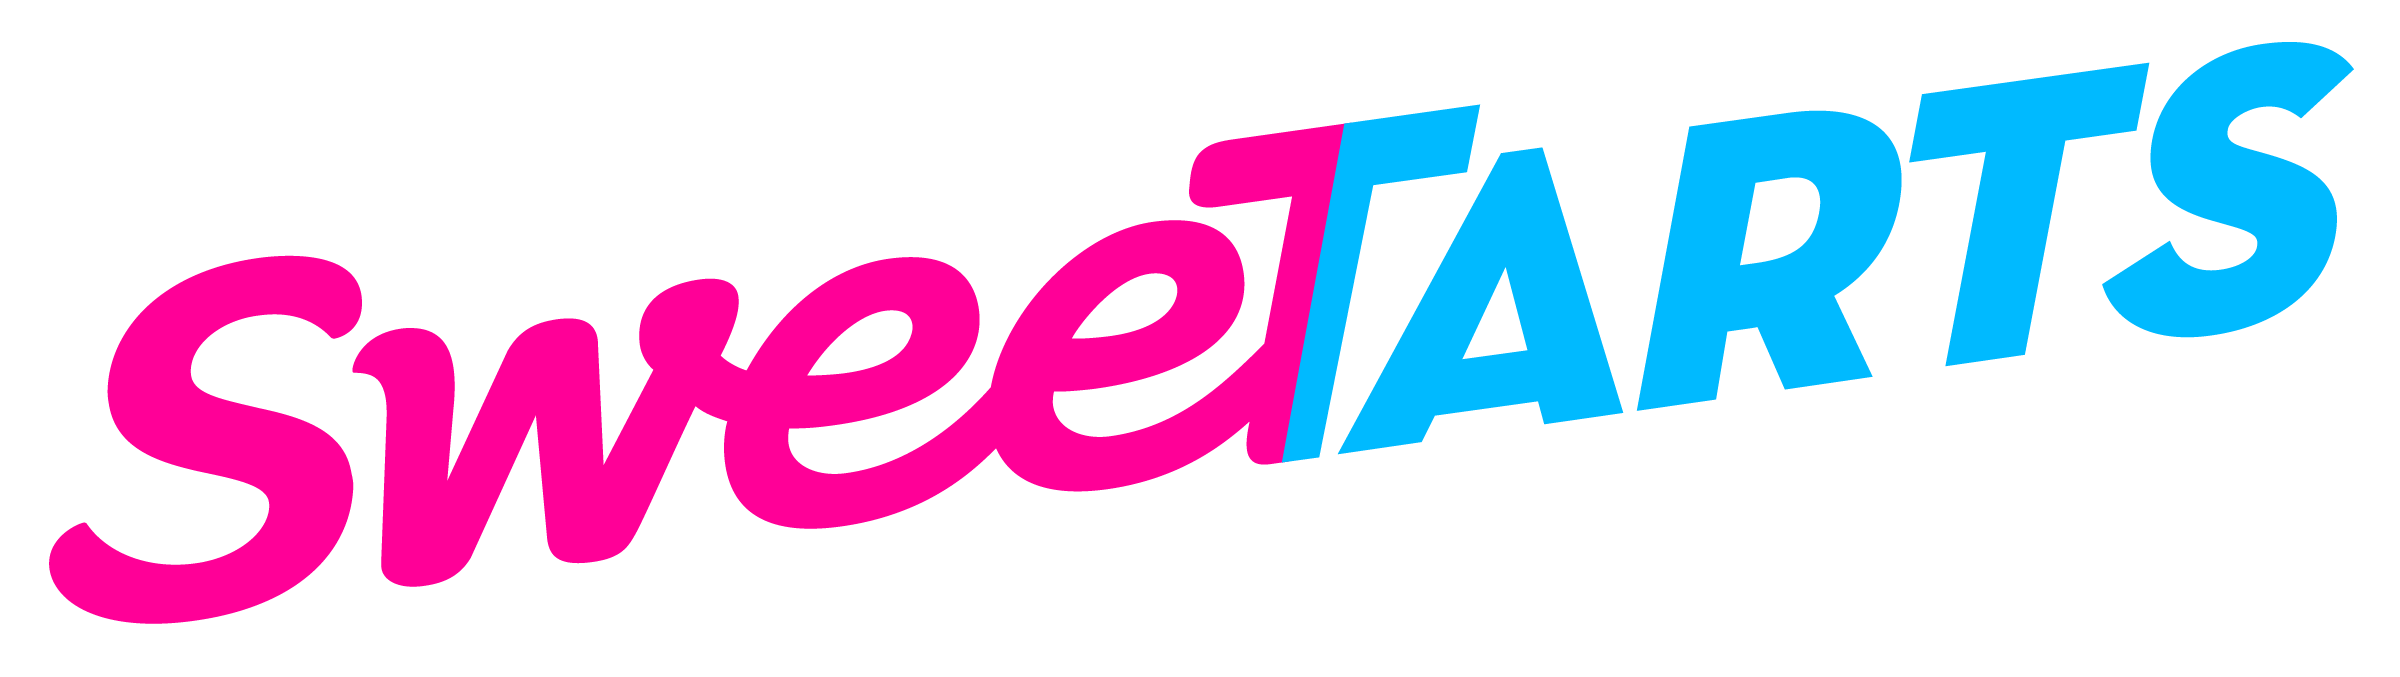 SweetTarts logo